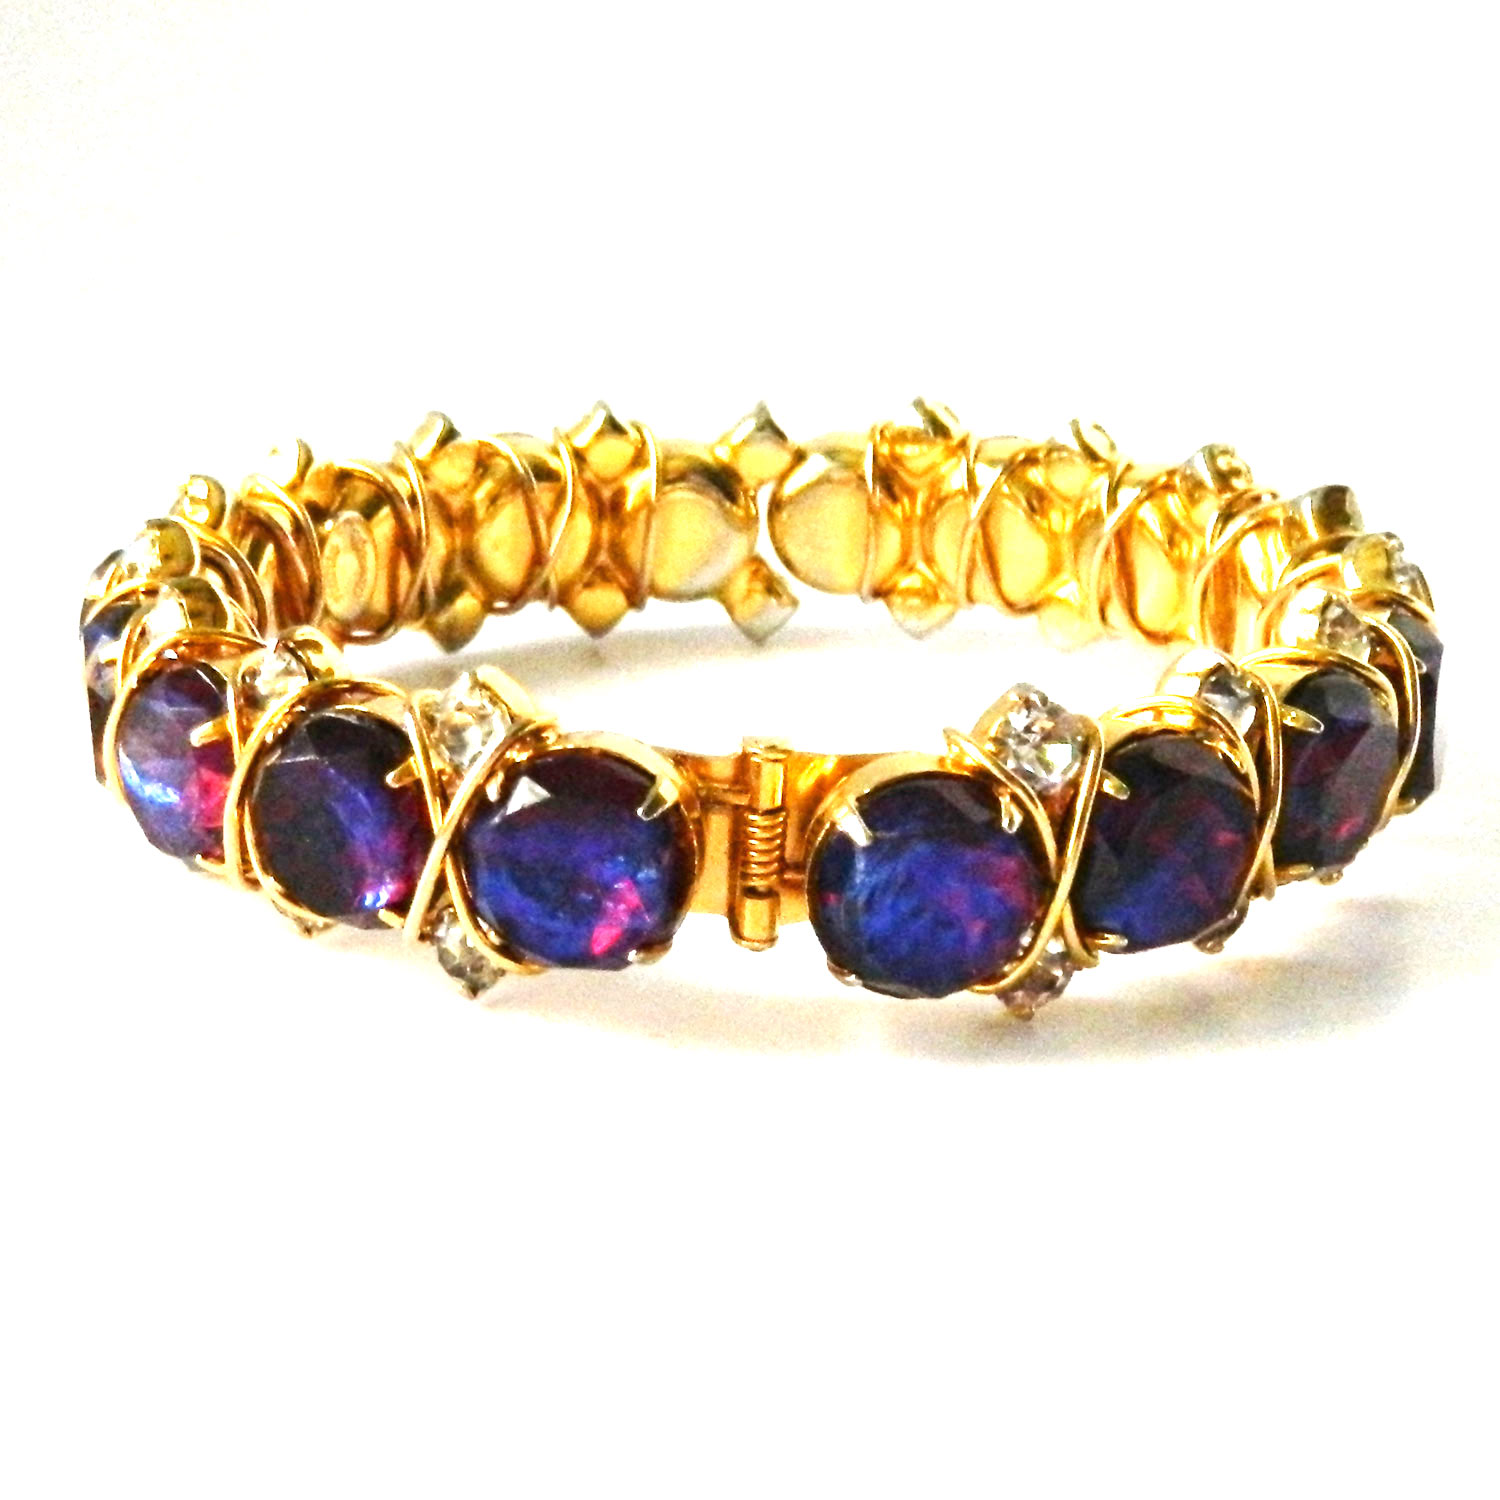 Goldette slide charm bracelet